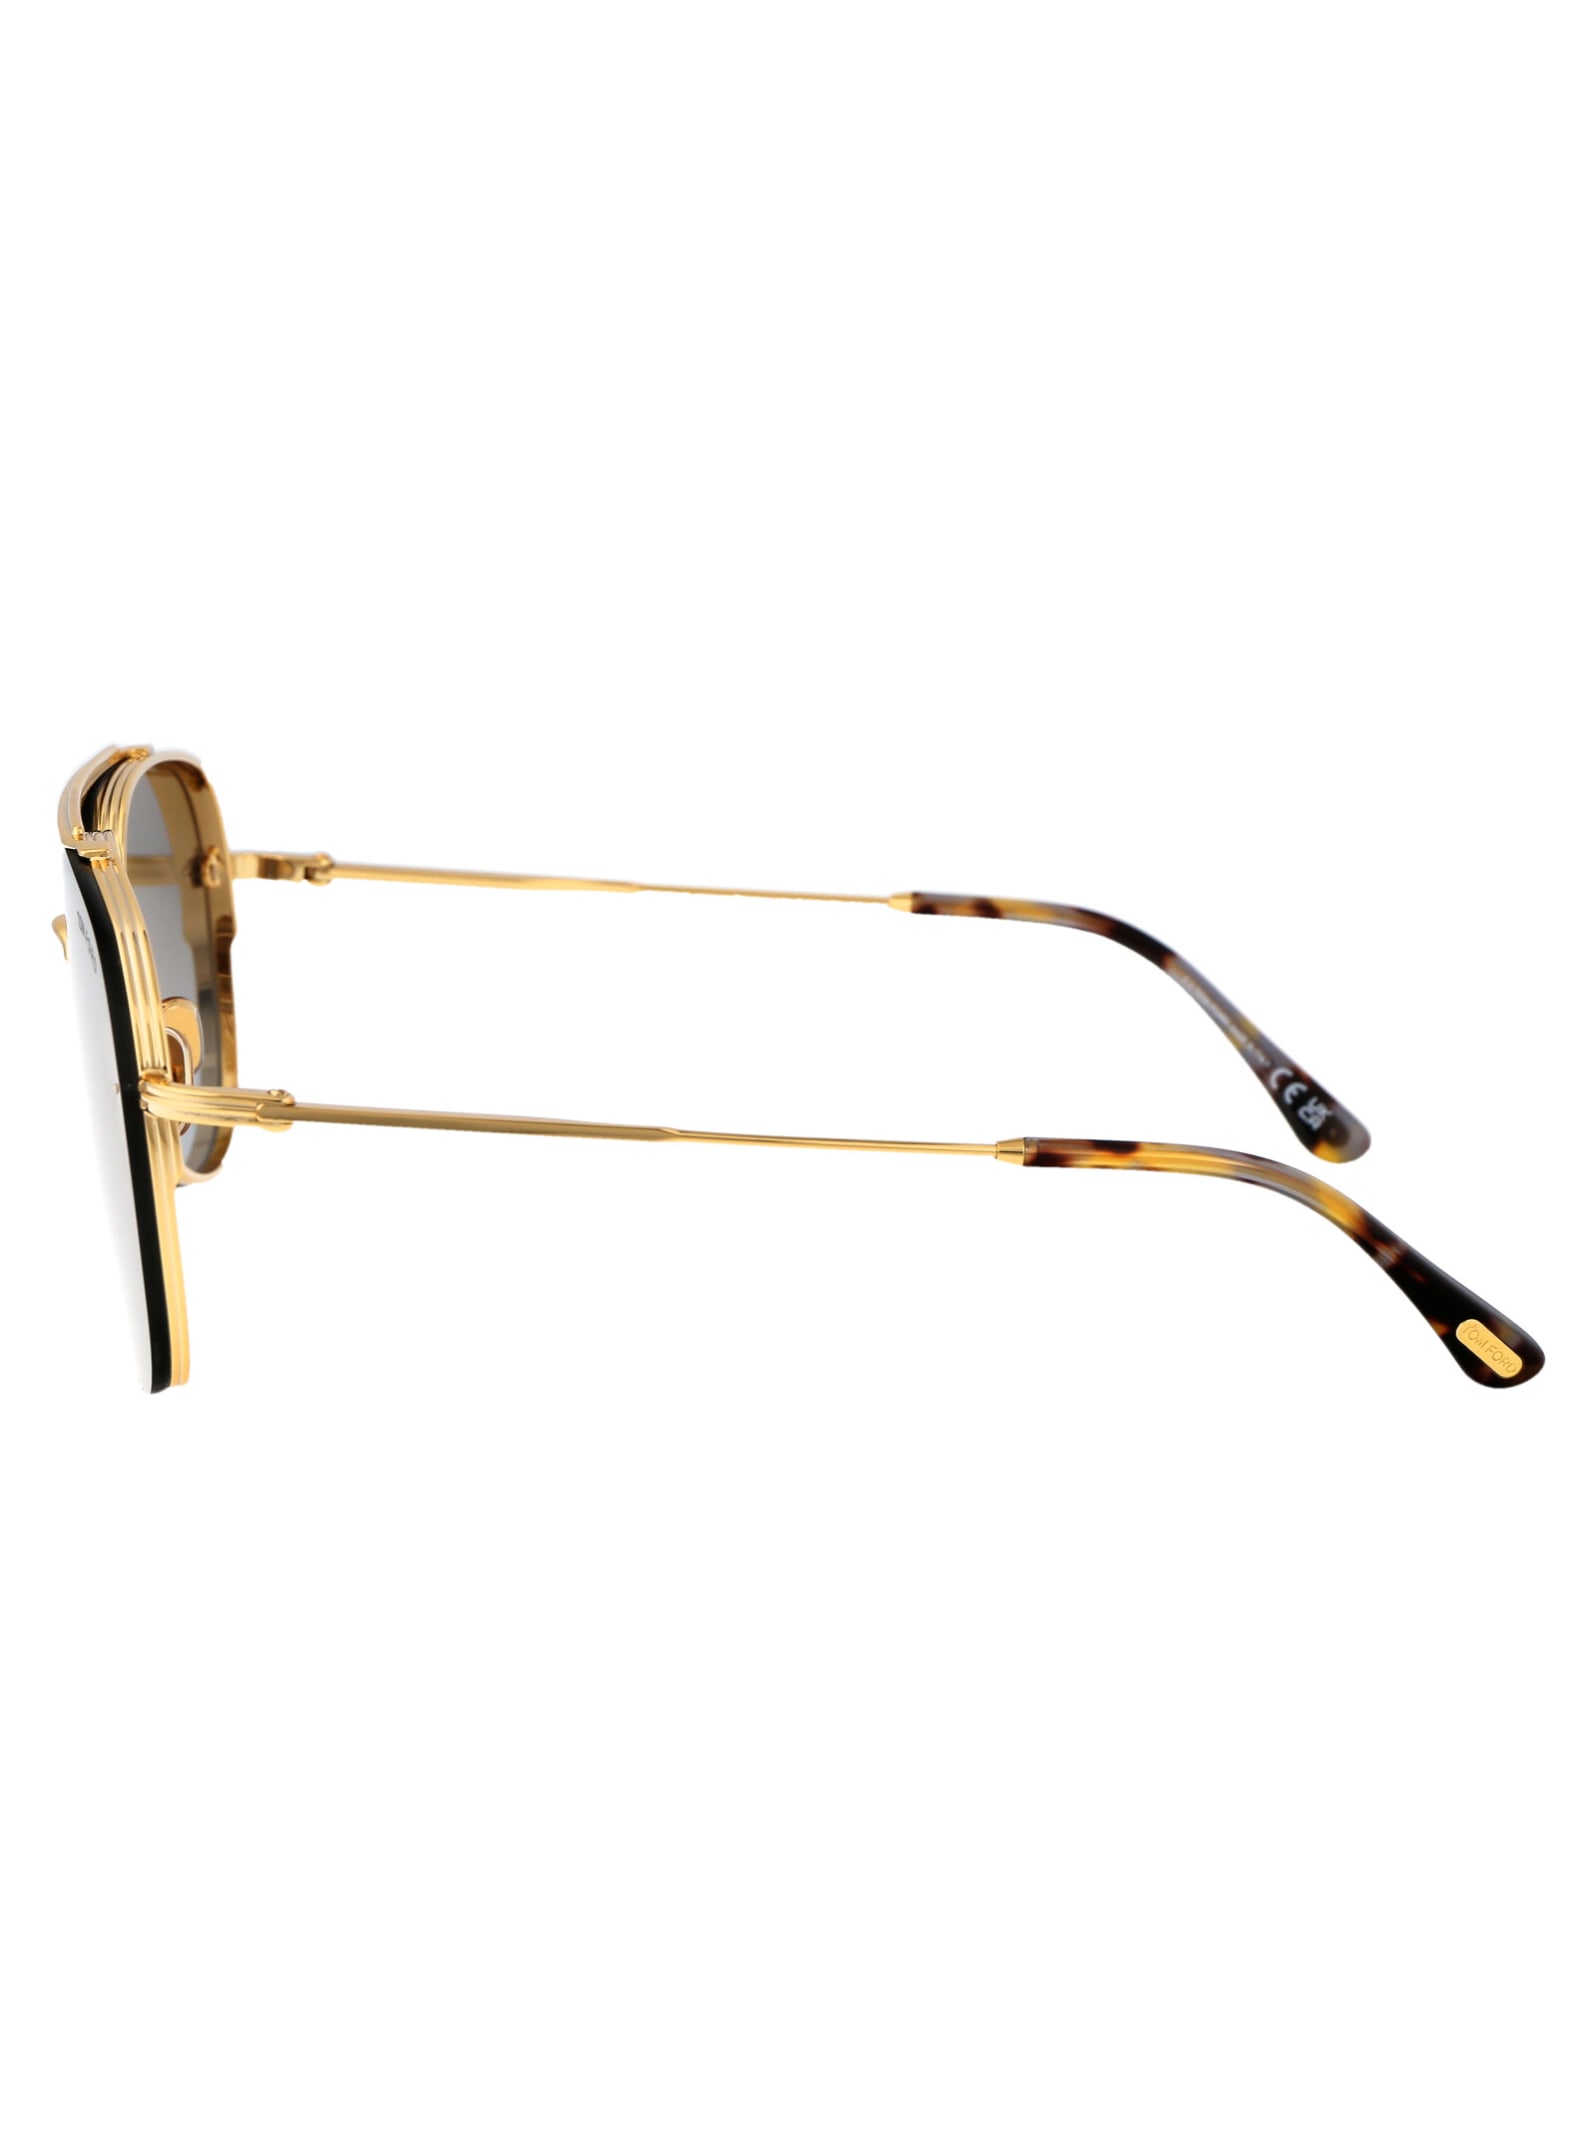 Shop Tom Ford Leon Sunglasses In 30f Oro Carico Lucido / Marrone Grad